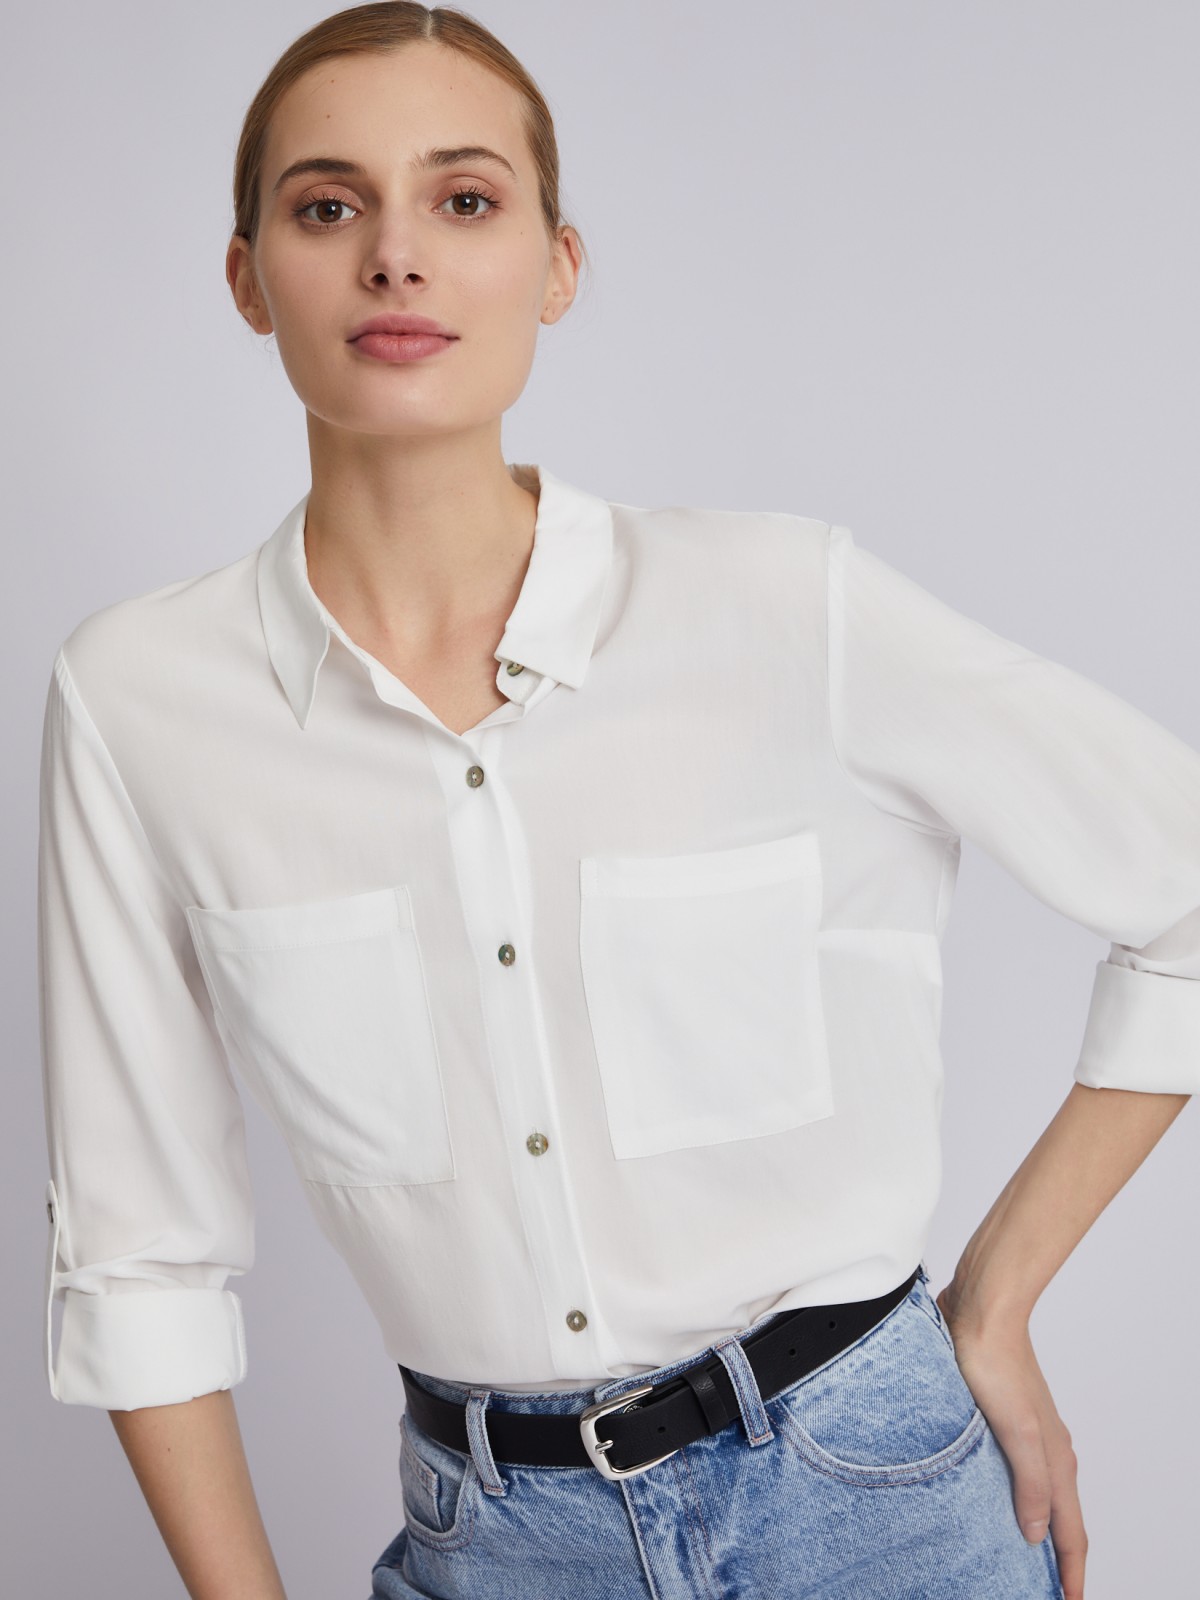 Офисная рубашка из вискозы с карманами и подхватами на рукавах zolla 023311162052, цвет молоко, размер XS - фото 1